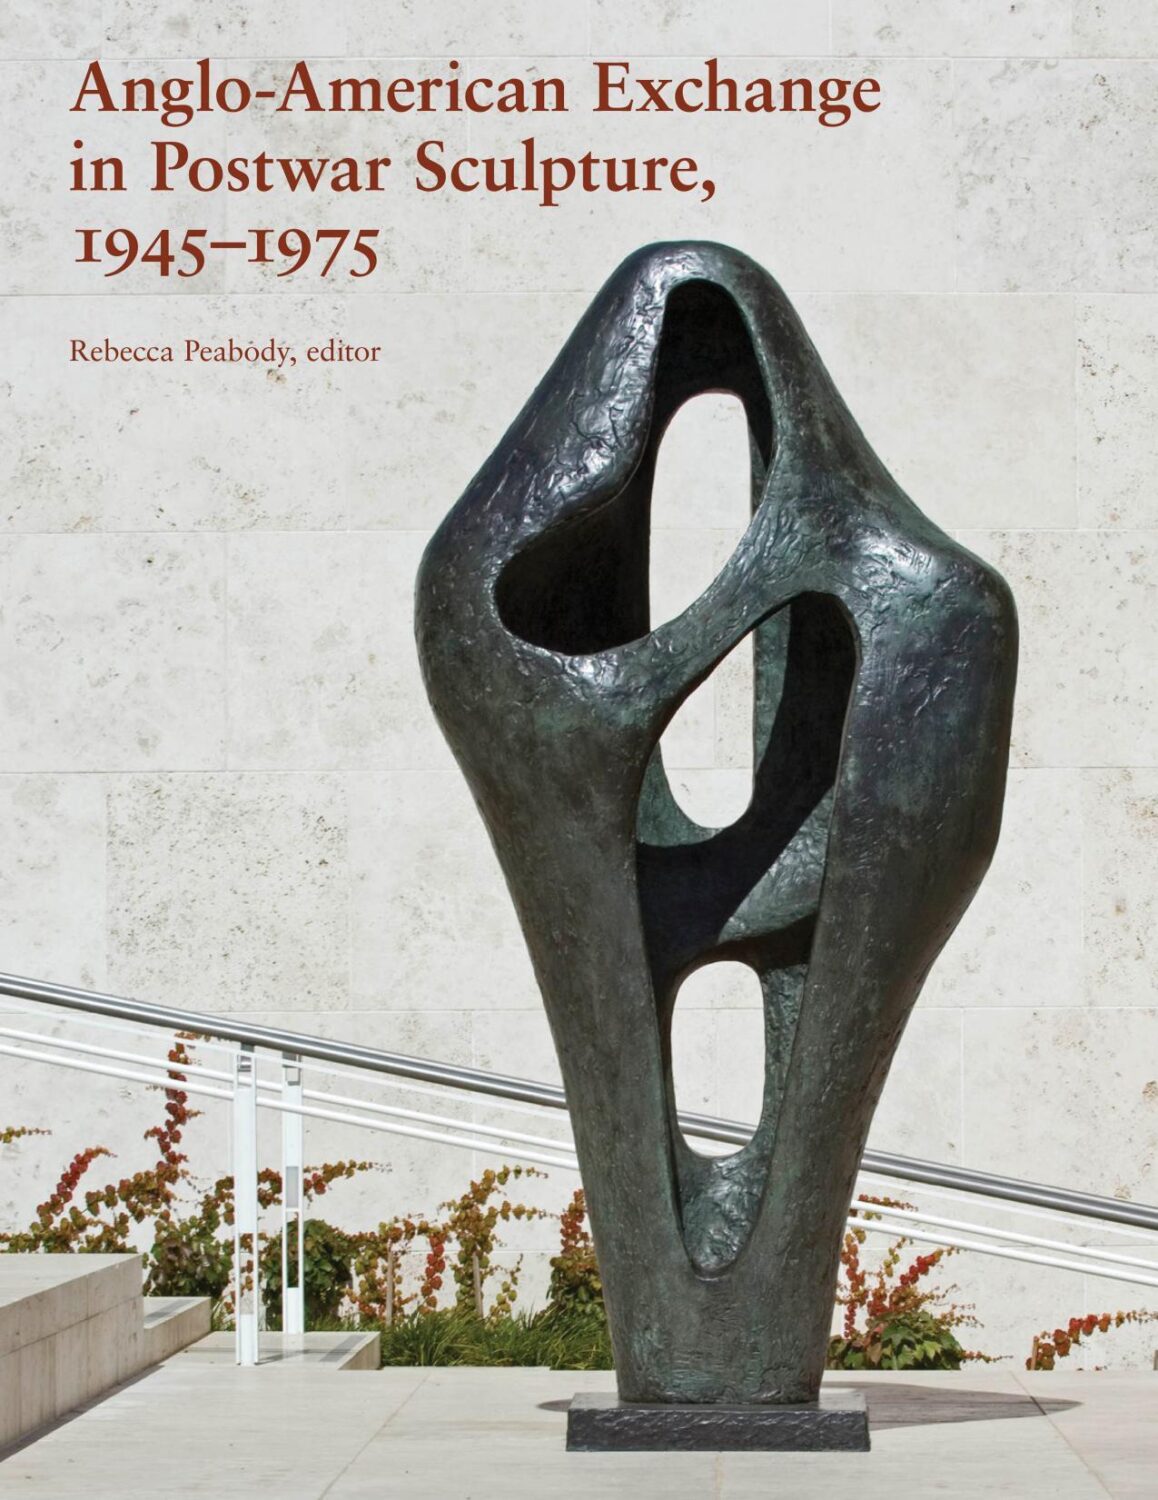 Anglo-American Exchange in Postwar Sculpture 1945-1975